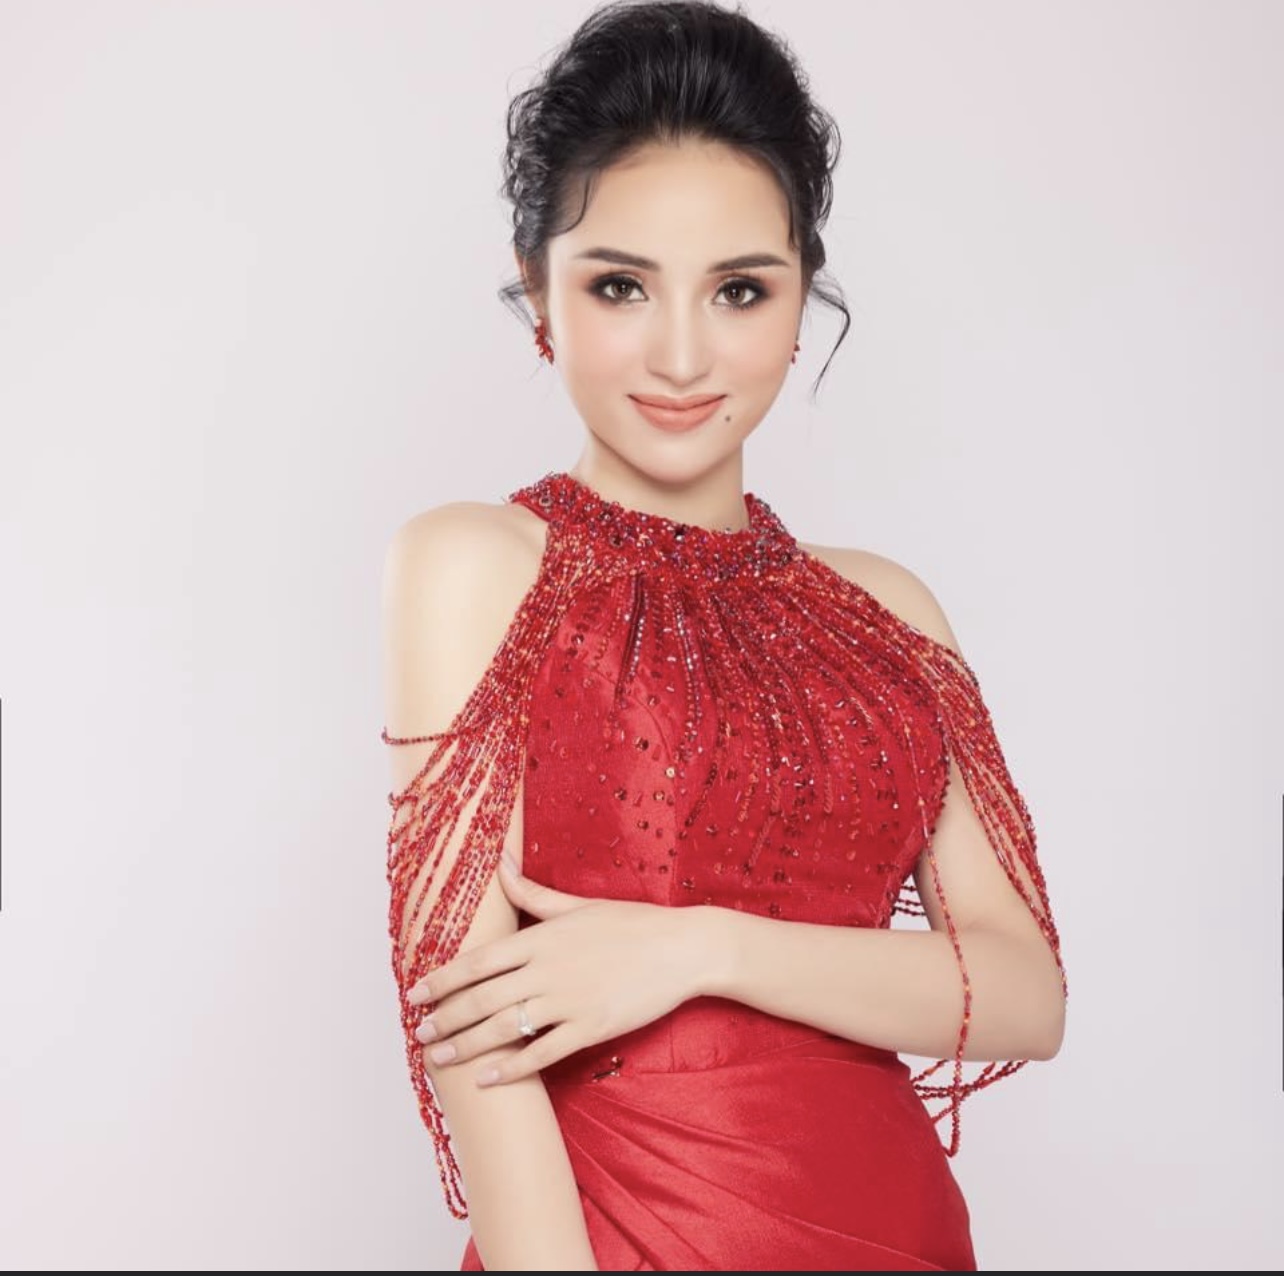 Thí sinh Mai Thanh Nhàn trong cuộc thi Hoa hậu Doanh nhân Việt Nam 2021.